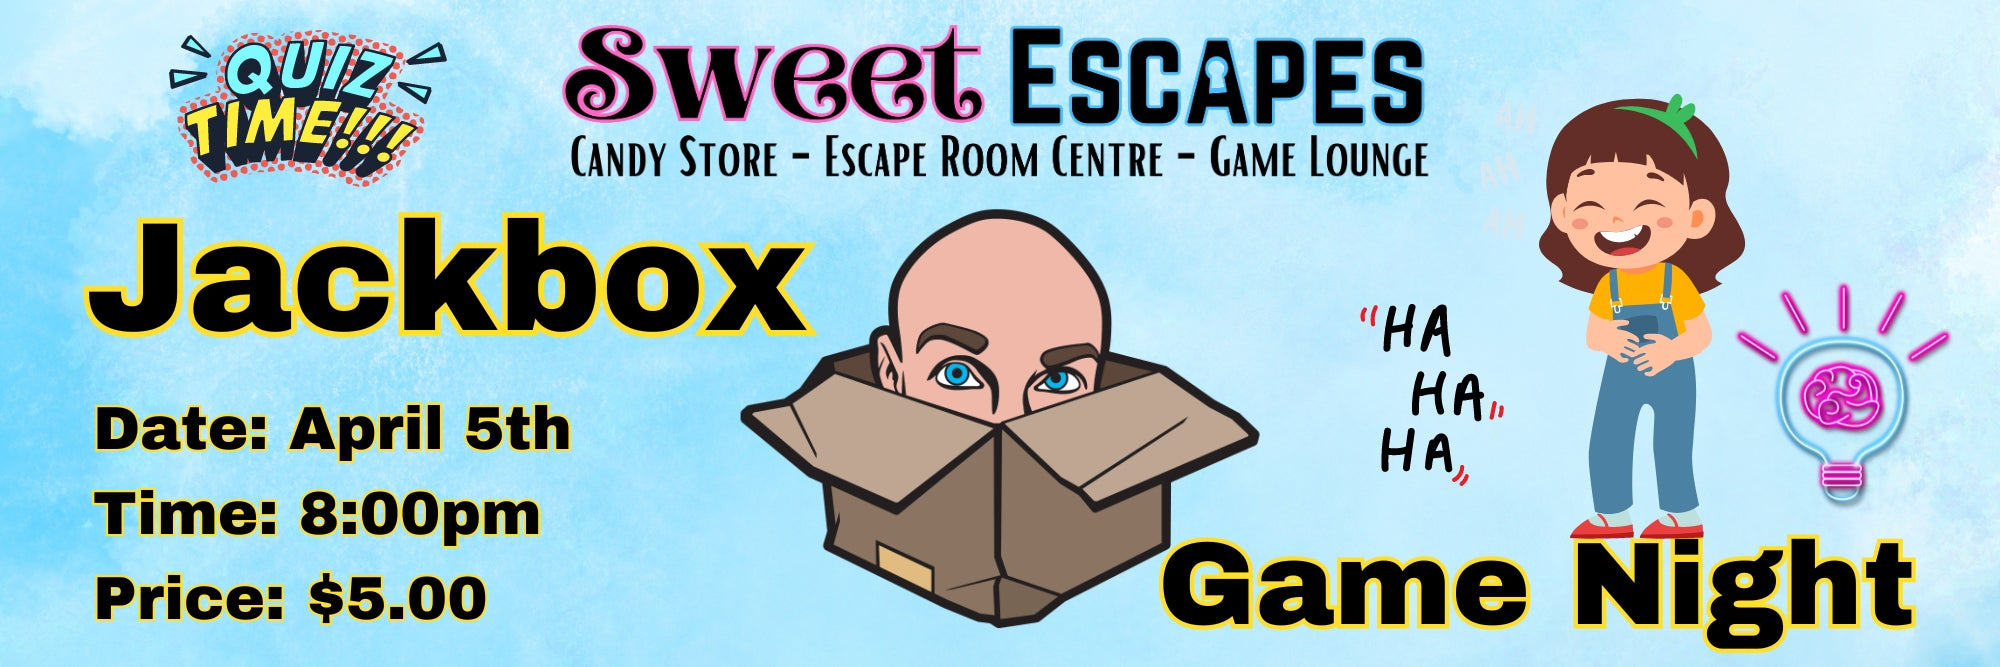 Sweet Escape Active Set